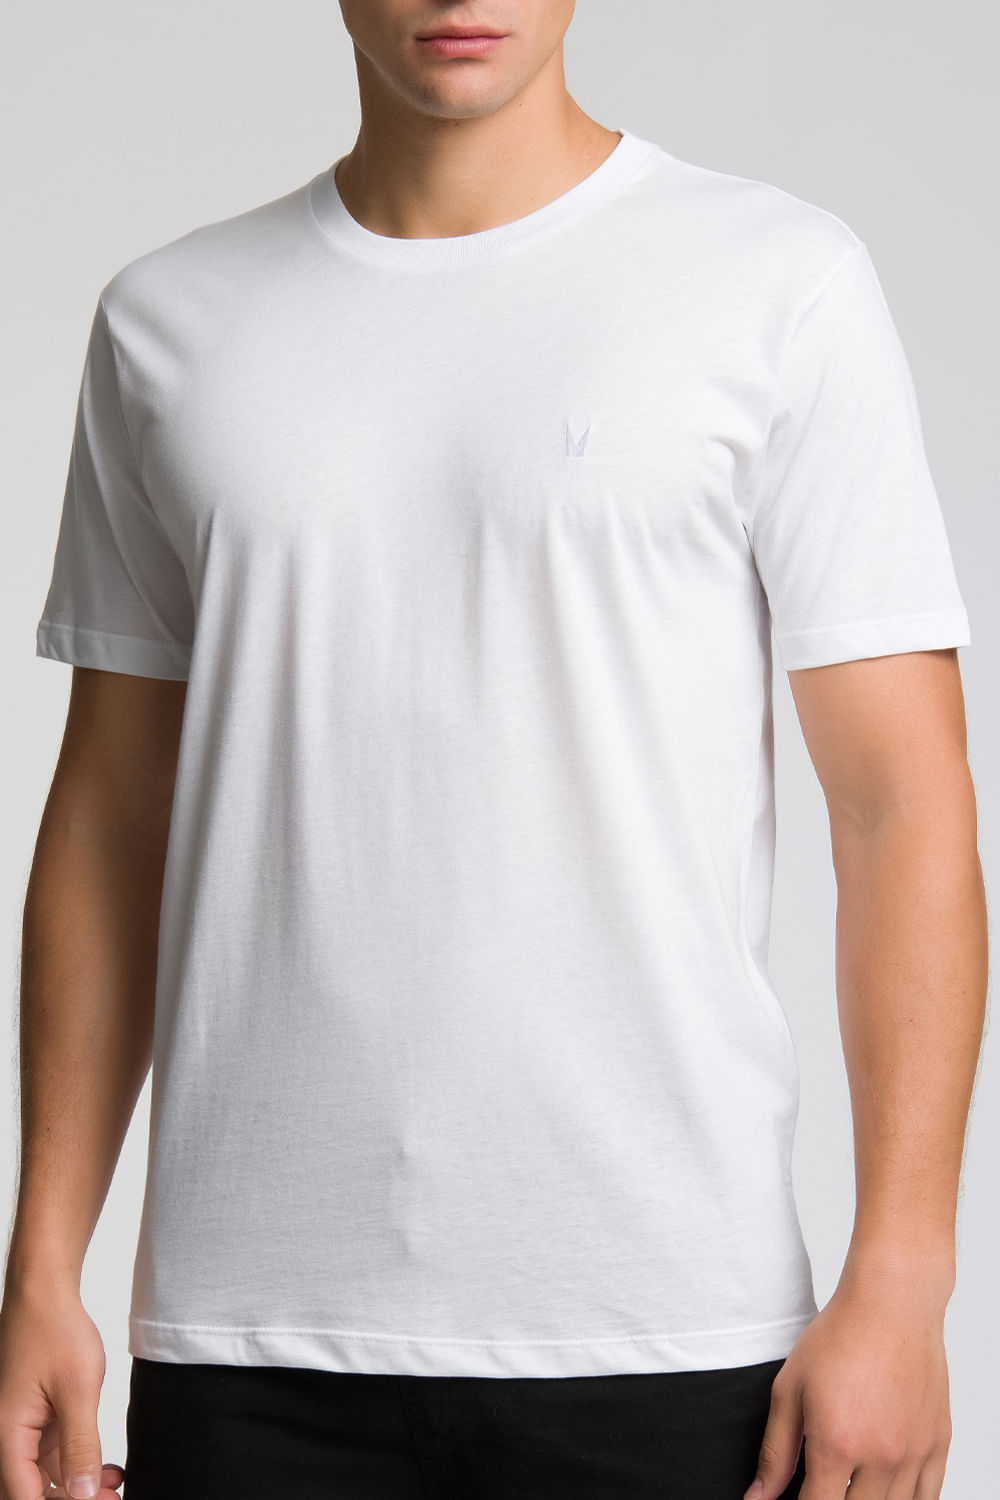 Camiseta Slim Delicate Branca - Bordada